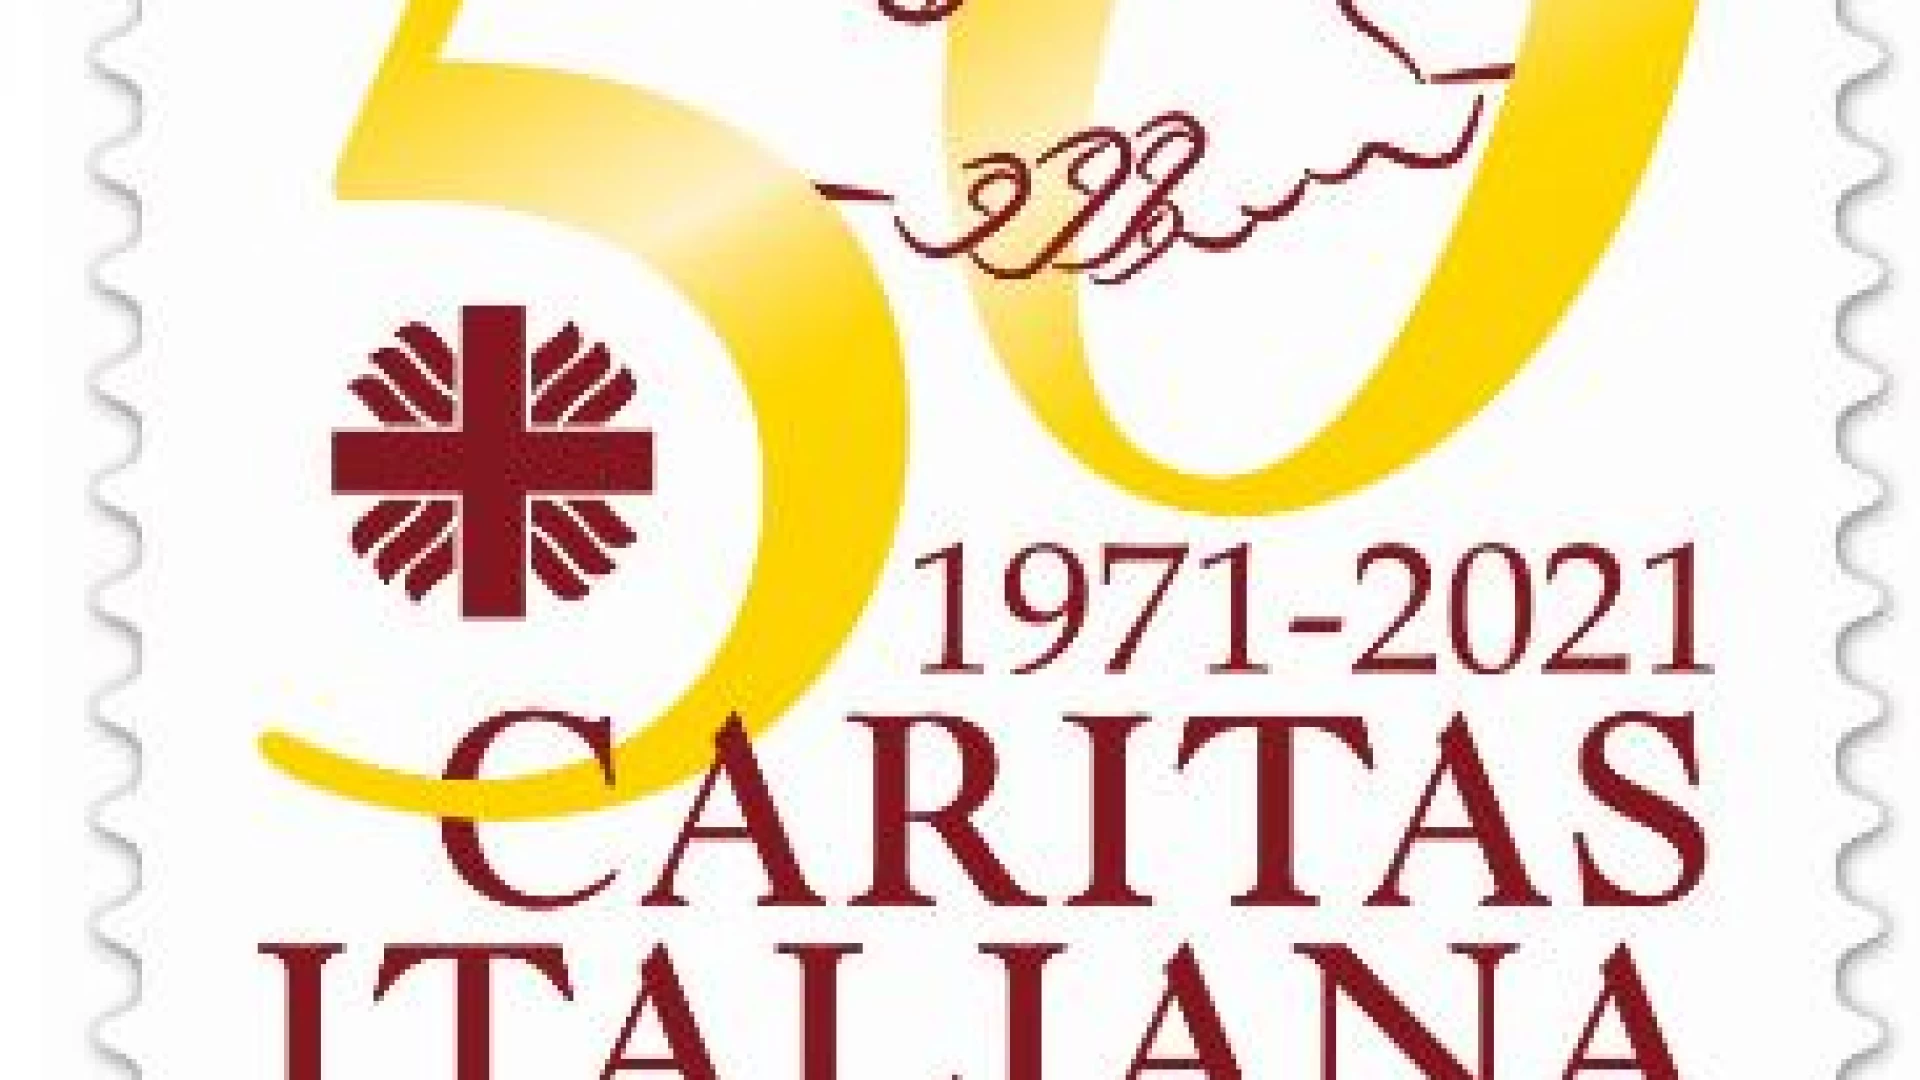 Emissione speciale di Poste Italiane. Realizzato un francobollo dedicato alla Caritas Italiana.